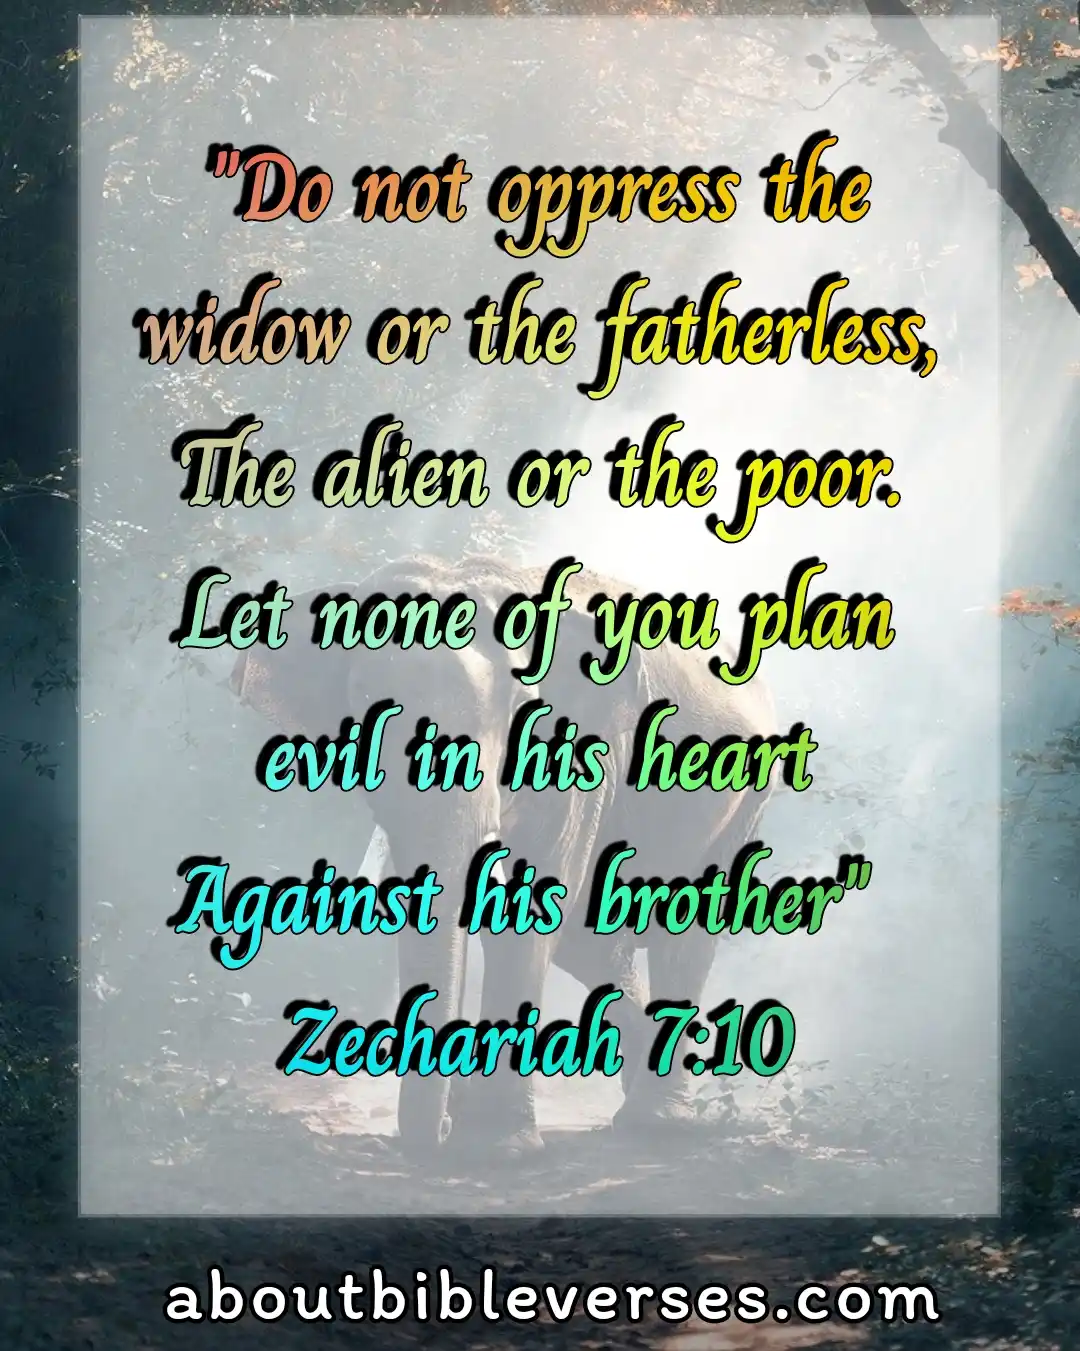 Today bible verse (Zechariah 7:10)